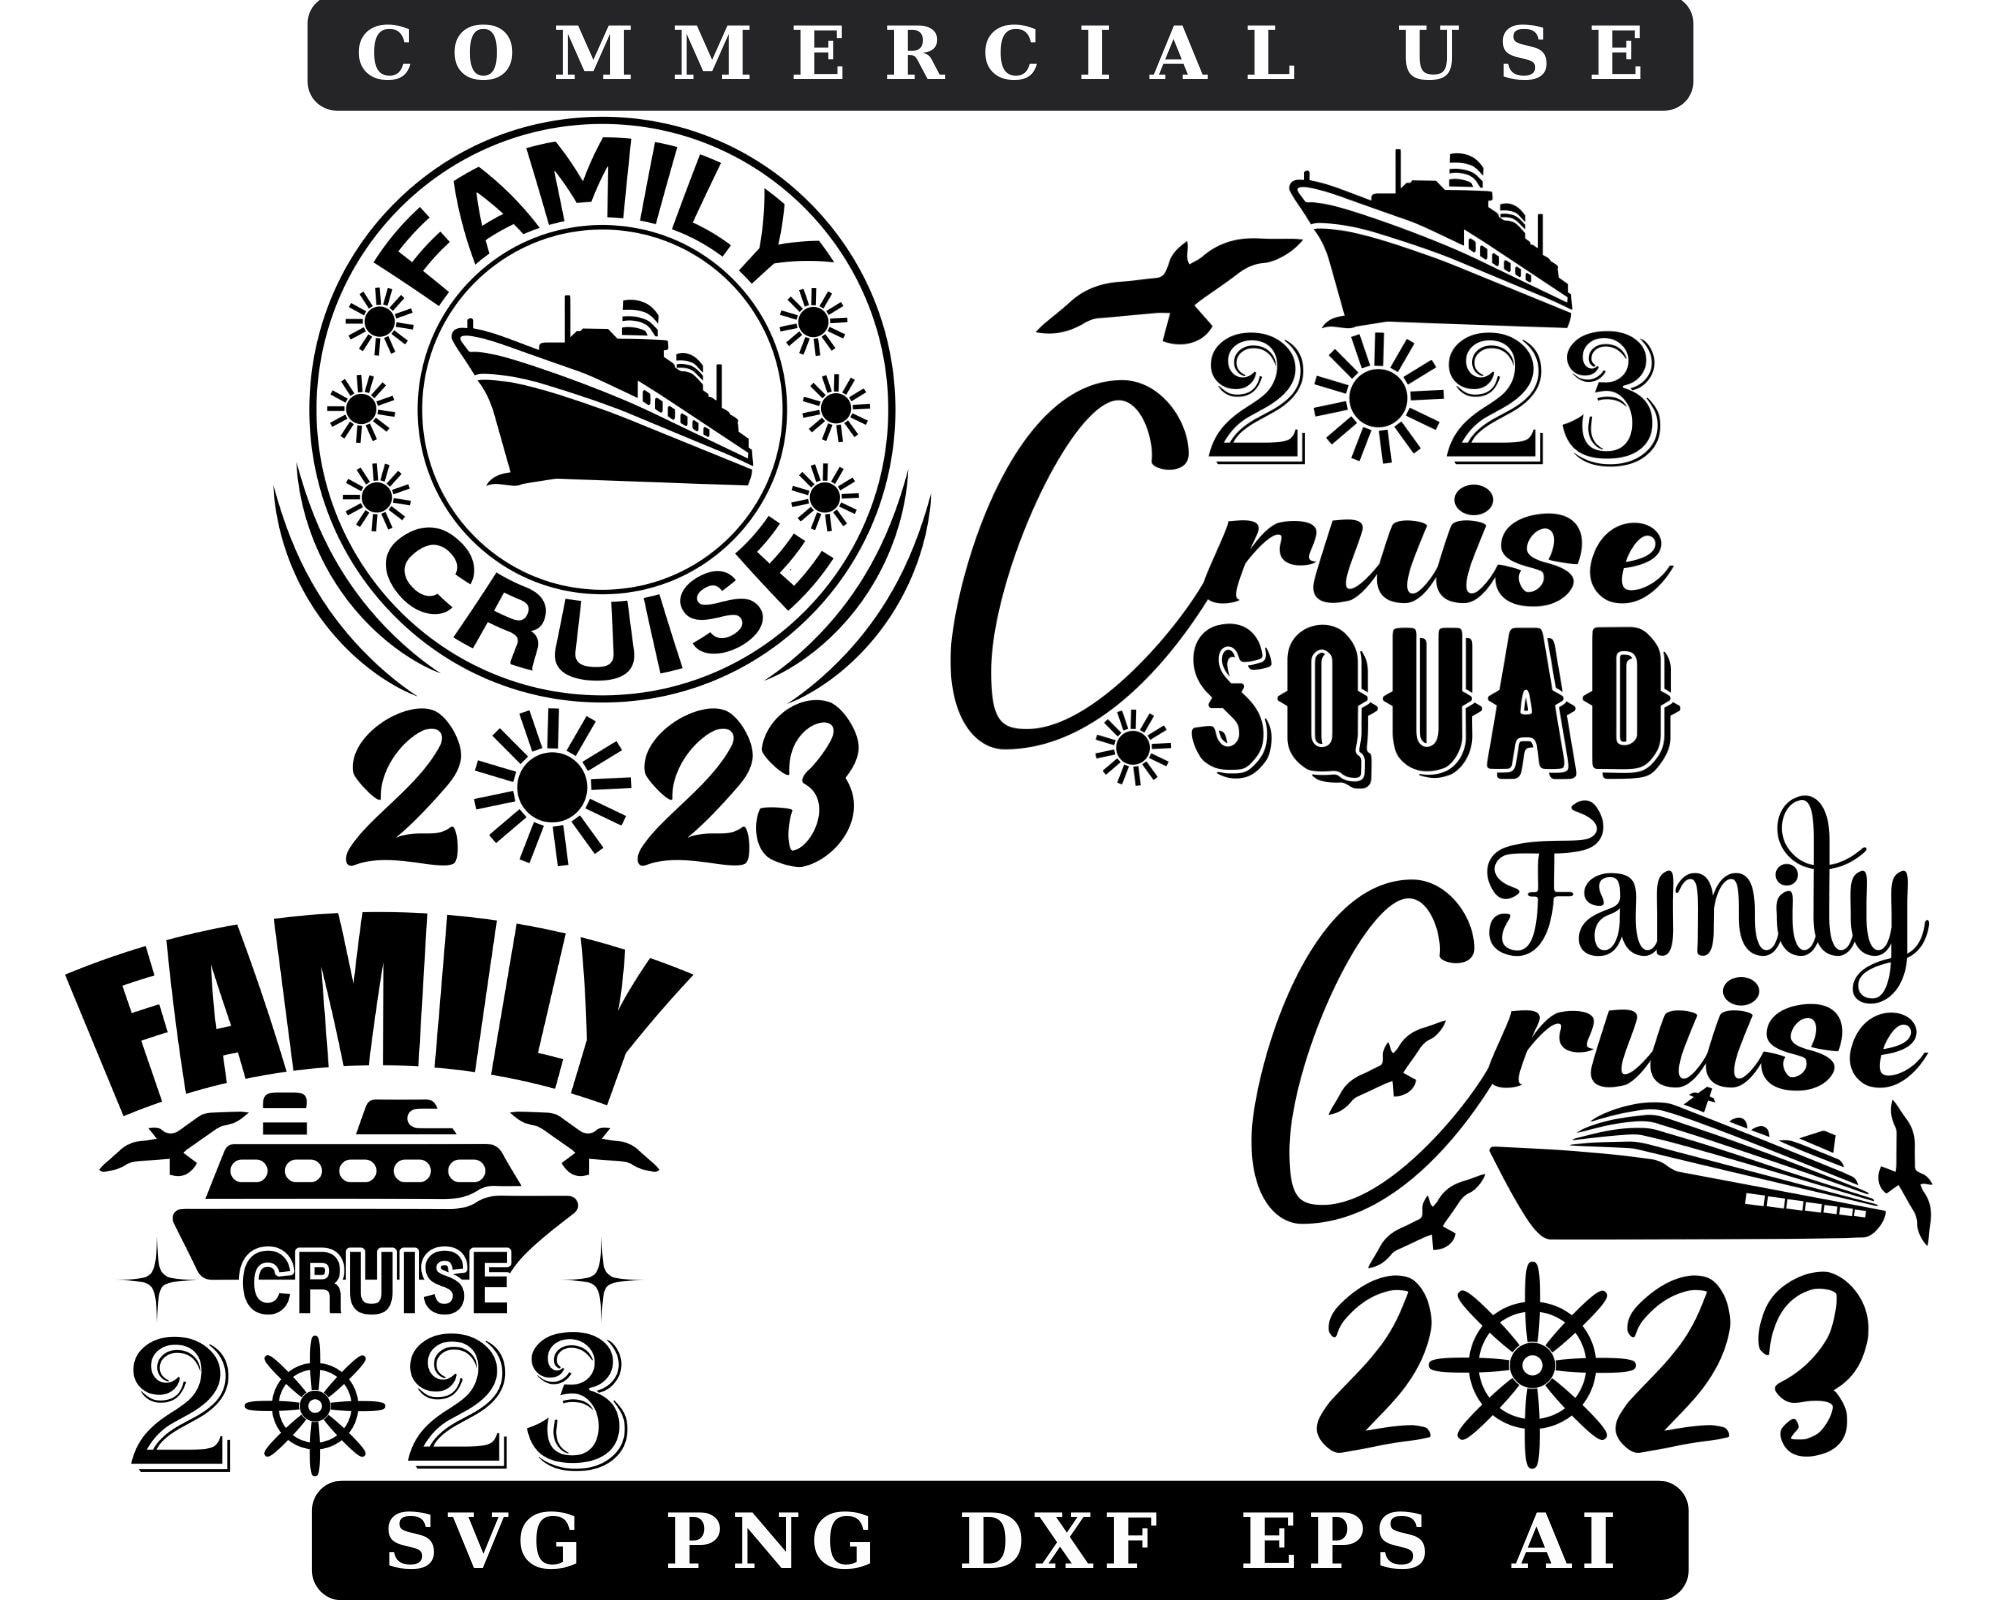 Family Cruise 2023 Bundle Svgcruise 2023 Svgfamily Cruise Etsy